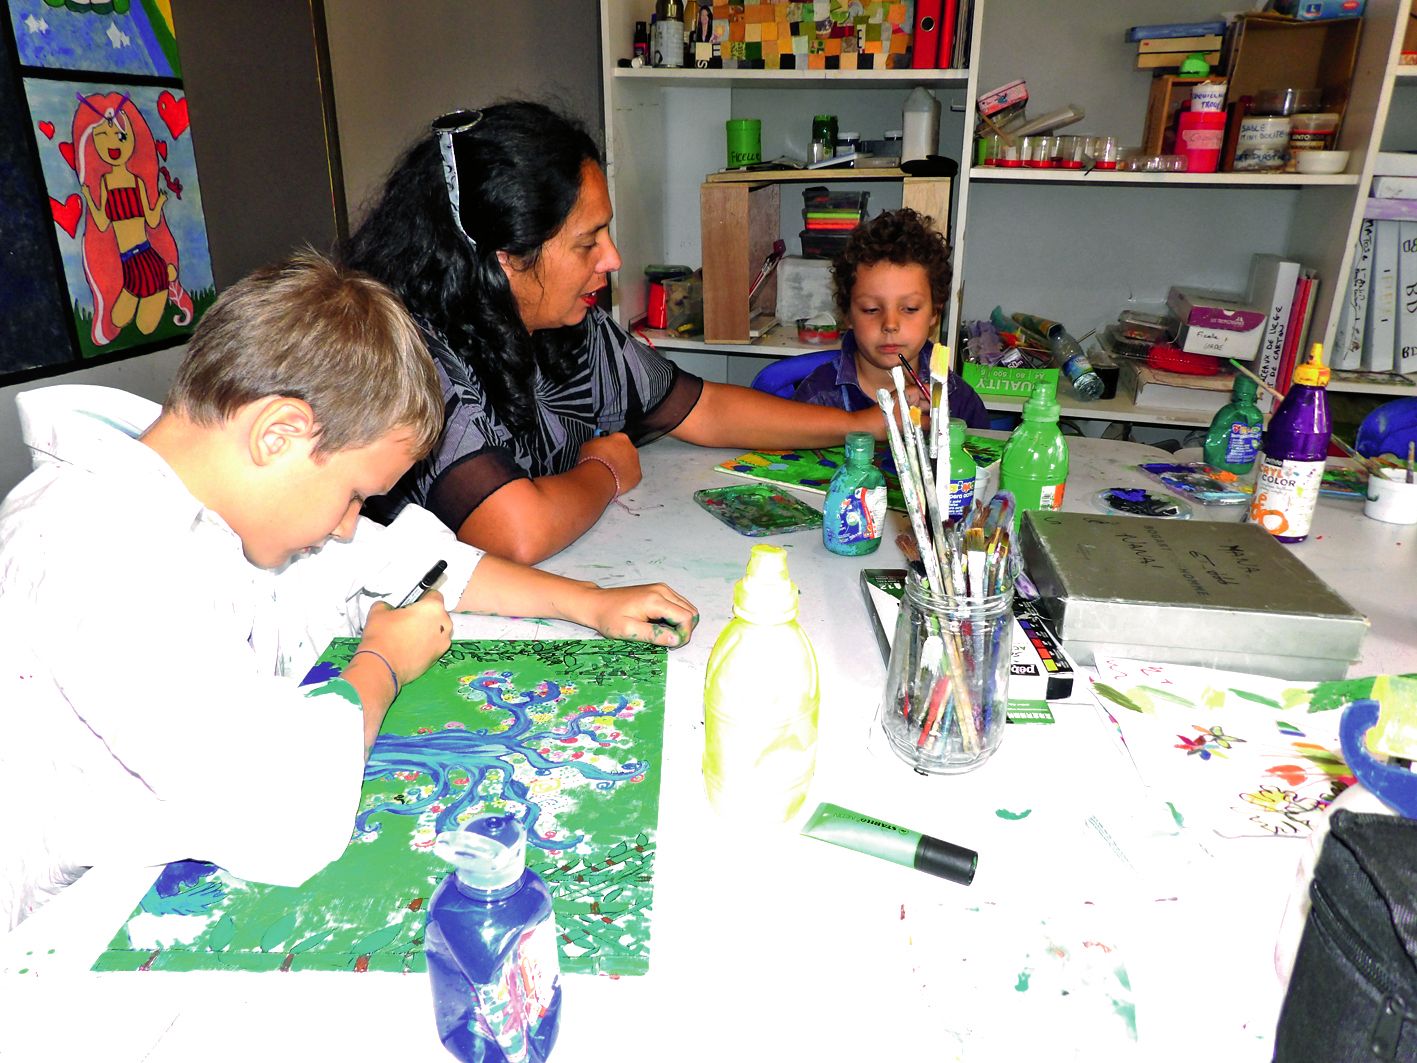 Receiving. Arts et études propose de tester la peinture sur bois aux 9-12 ans. S’inspirant d’une artiste française qui peint la nature, les neuf enfants ont composé de belles productions colorées qu’ils rapporteront chez eux.